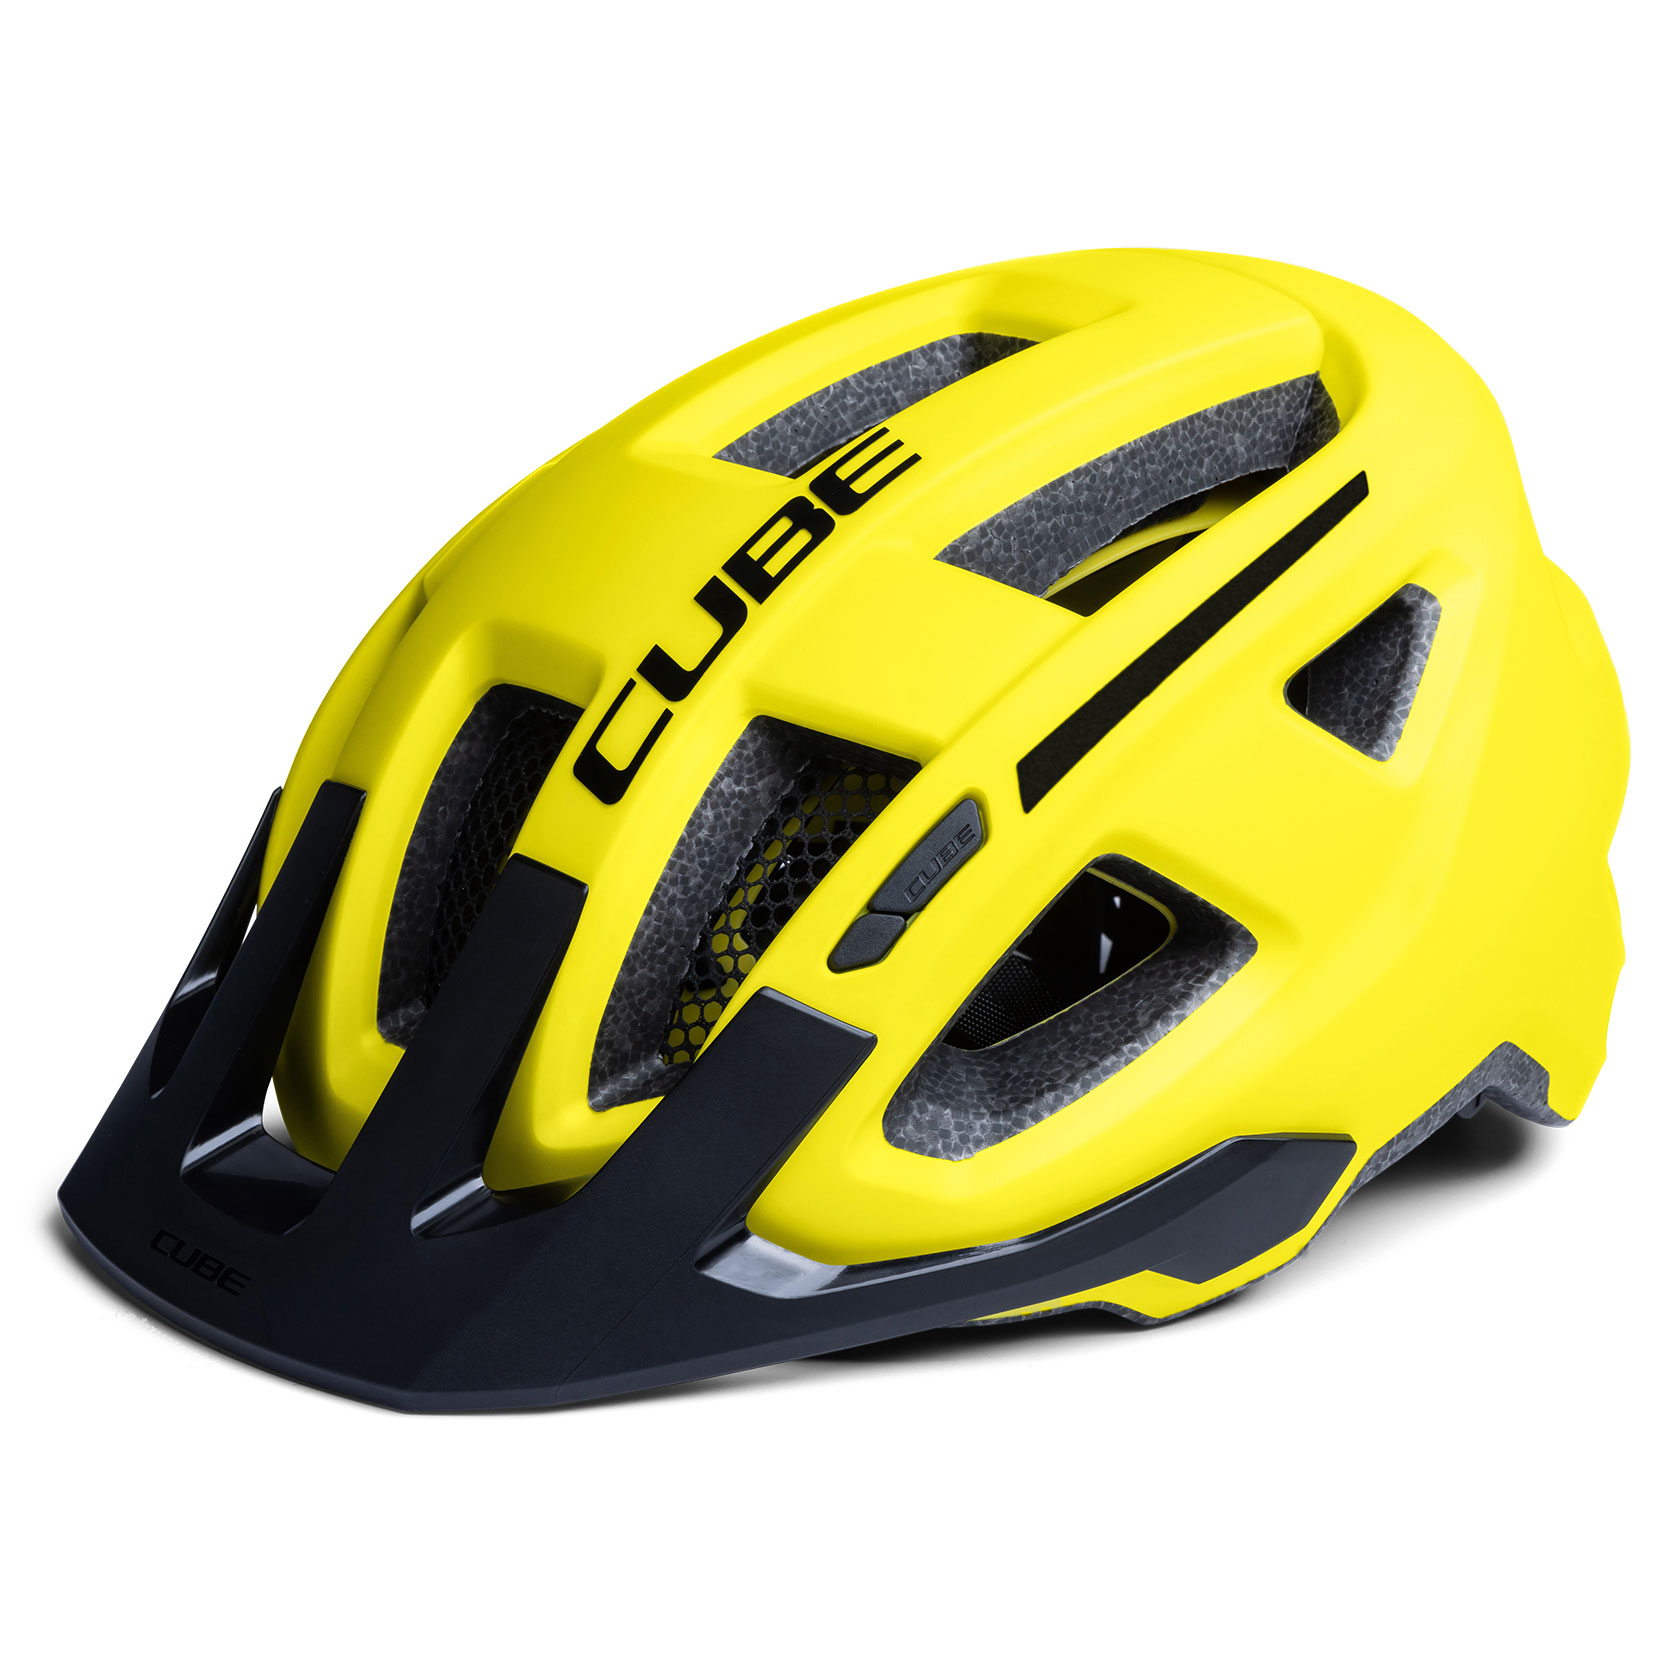 Productfoto van CUBE FLEET Helmet - yellow